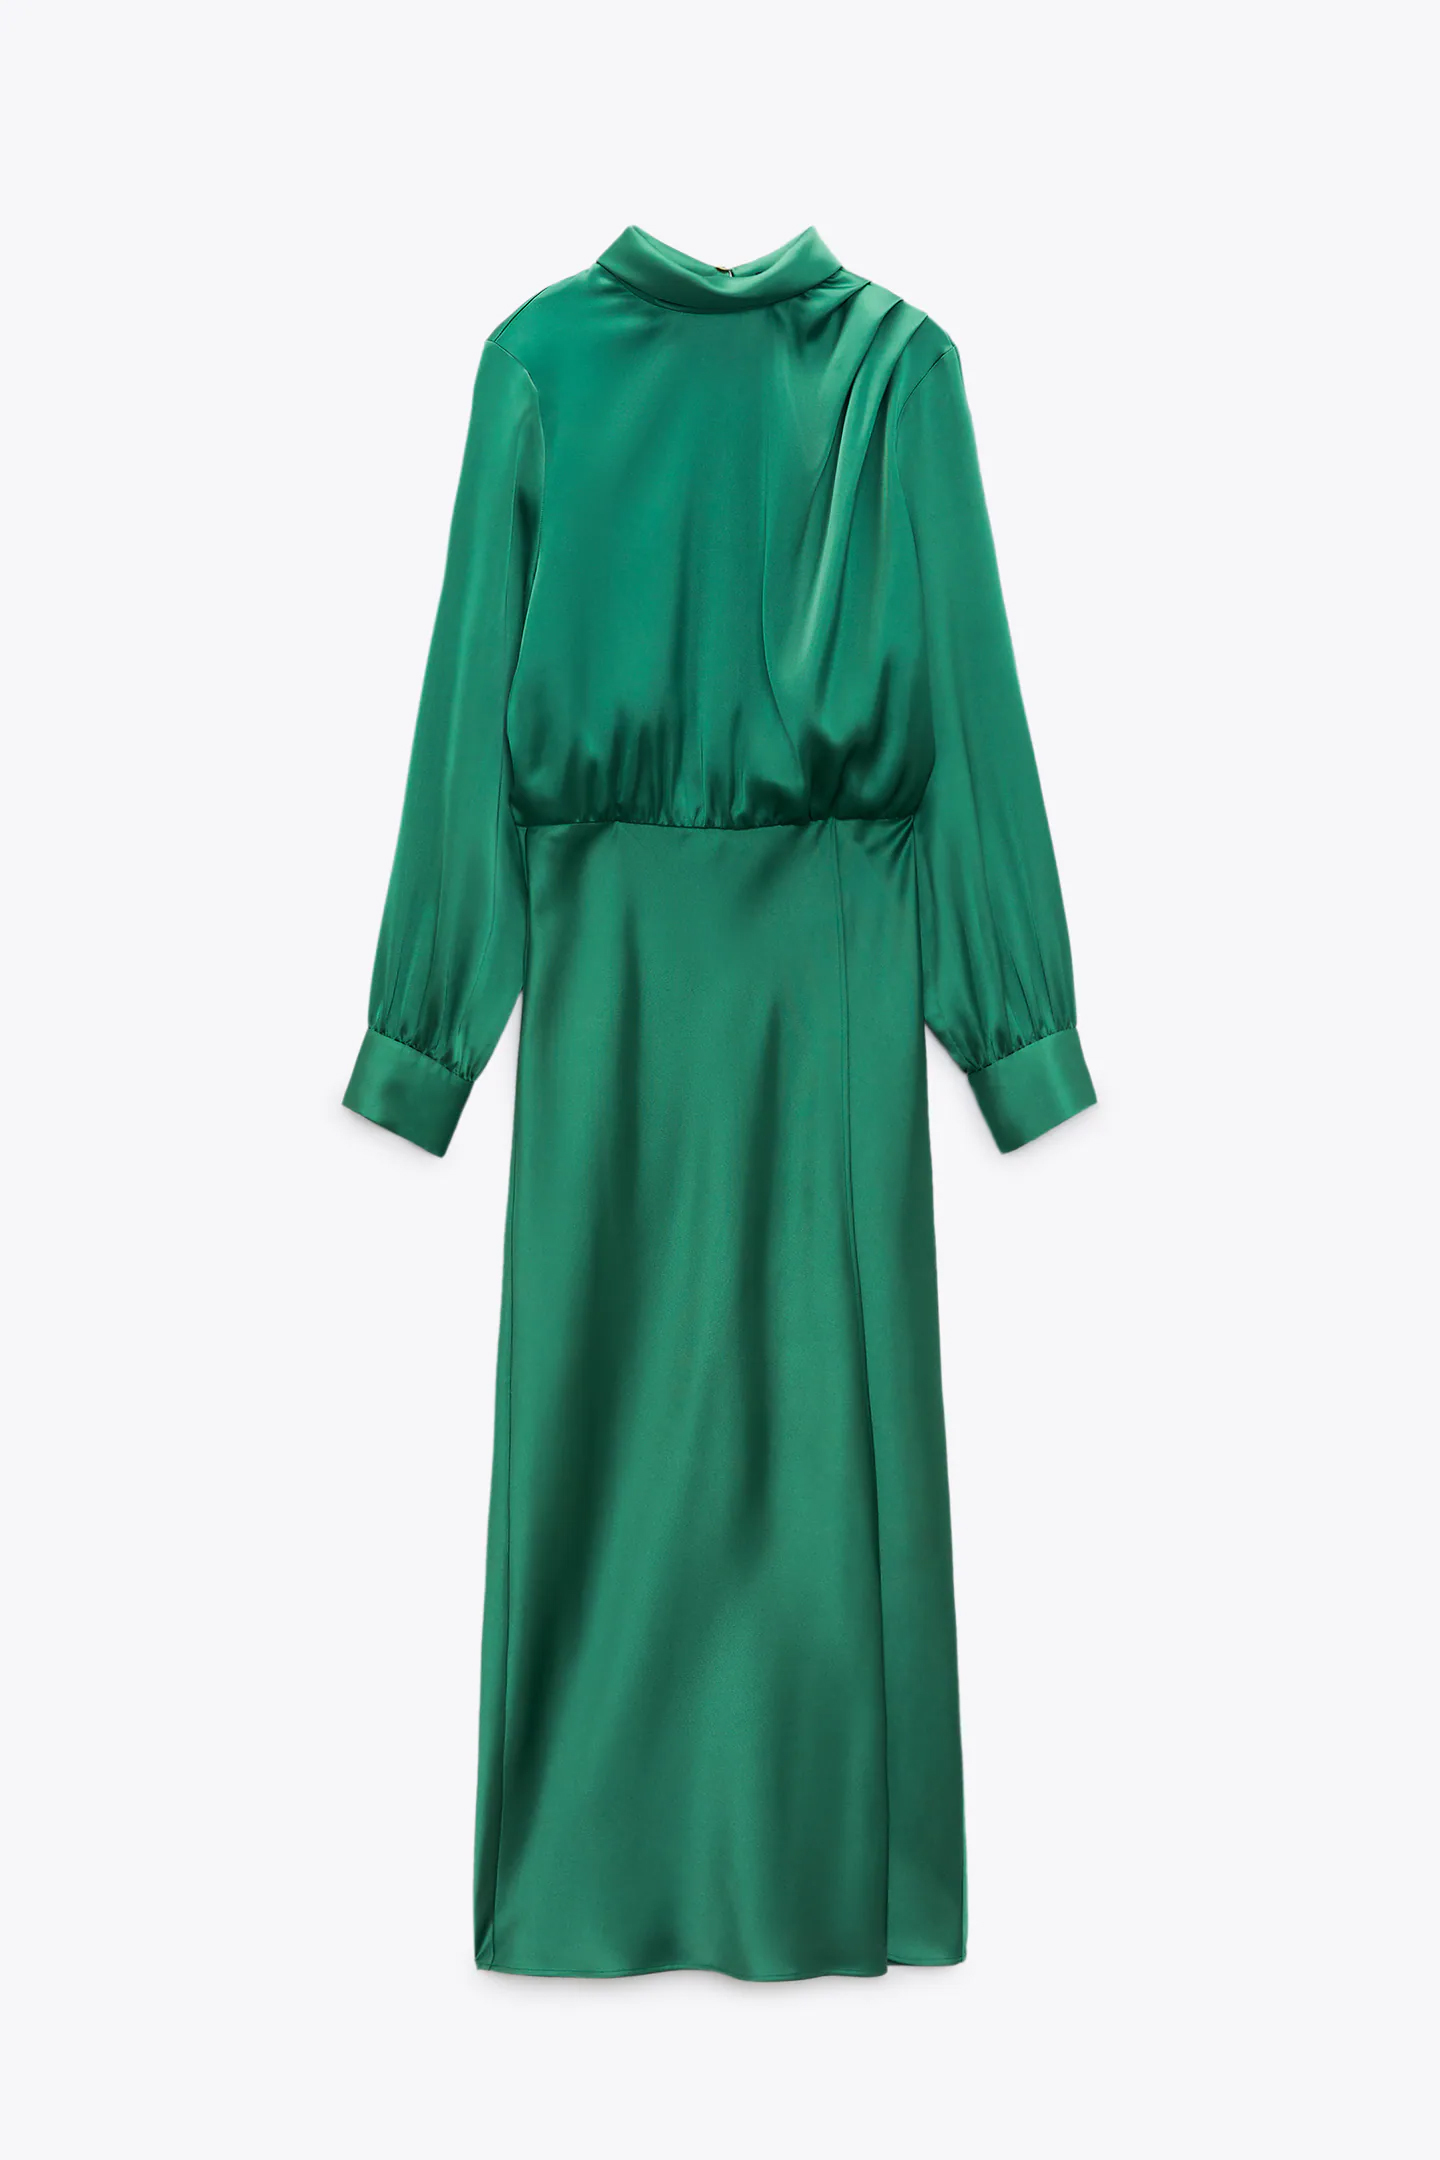 Vestido satinado midi de cuello subido, manga larga y botón joya. Zara (39,95 euros).